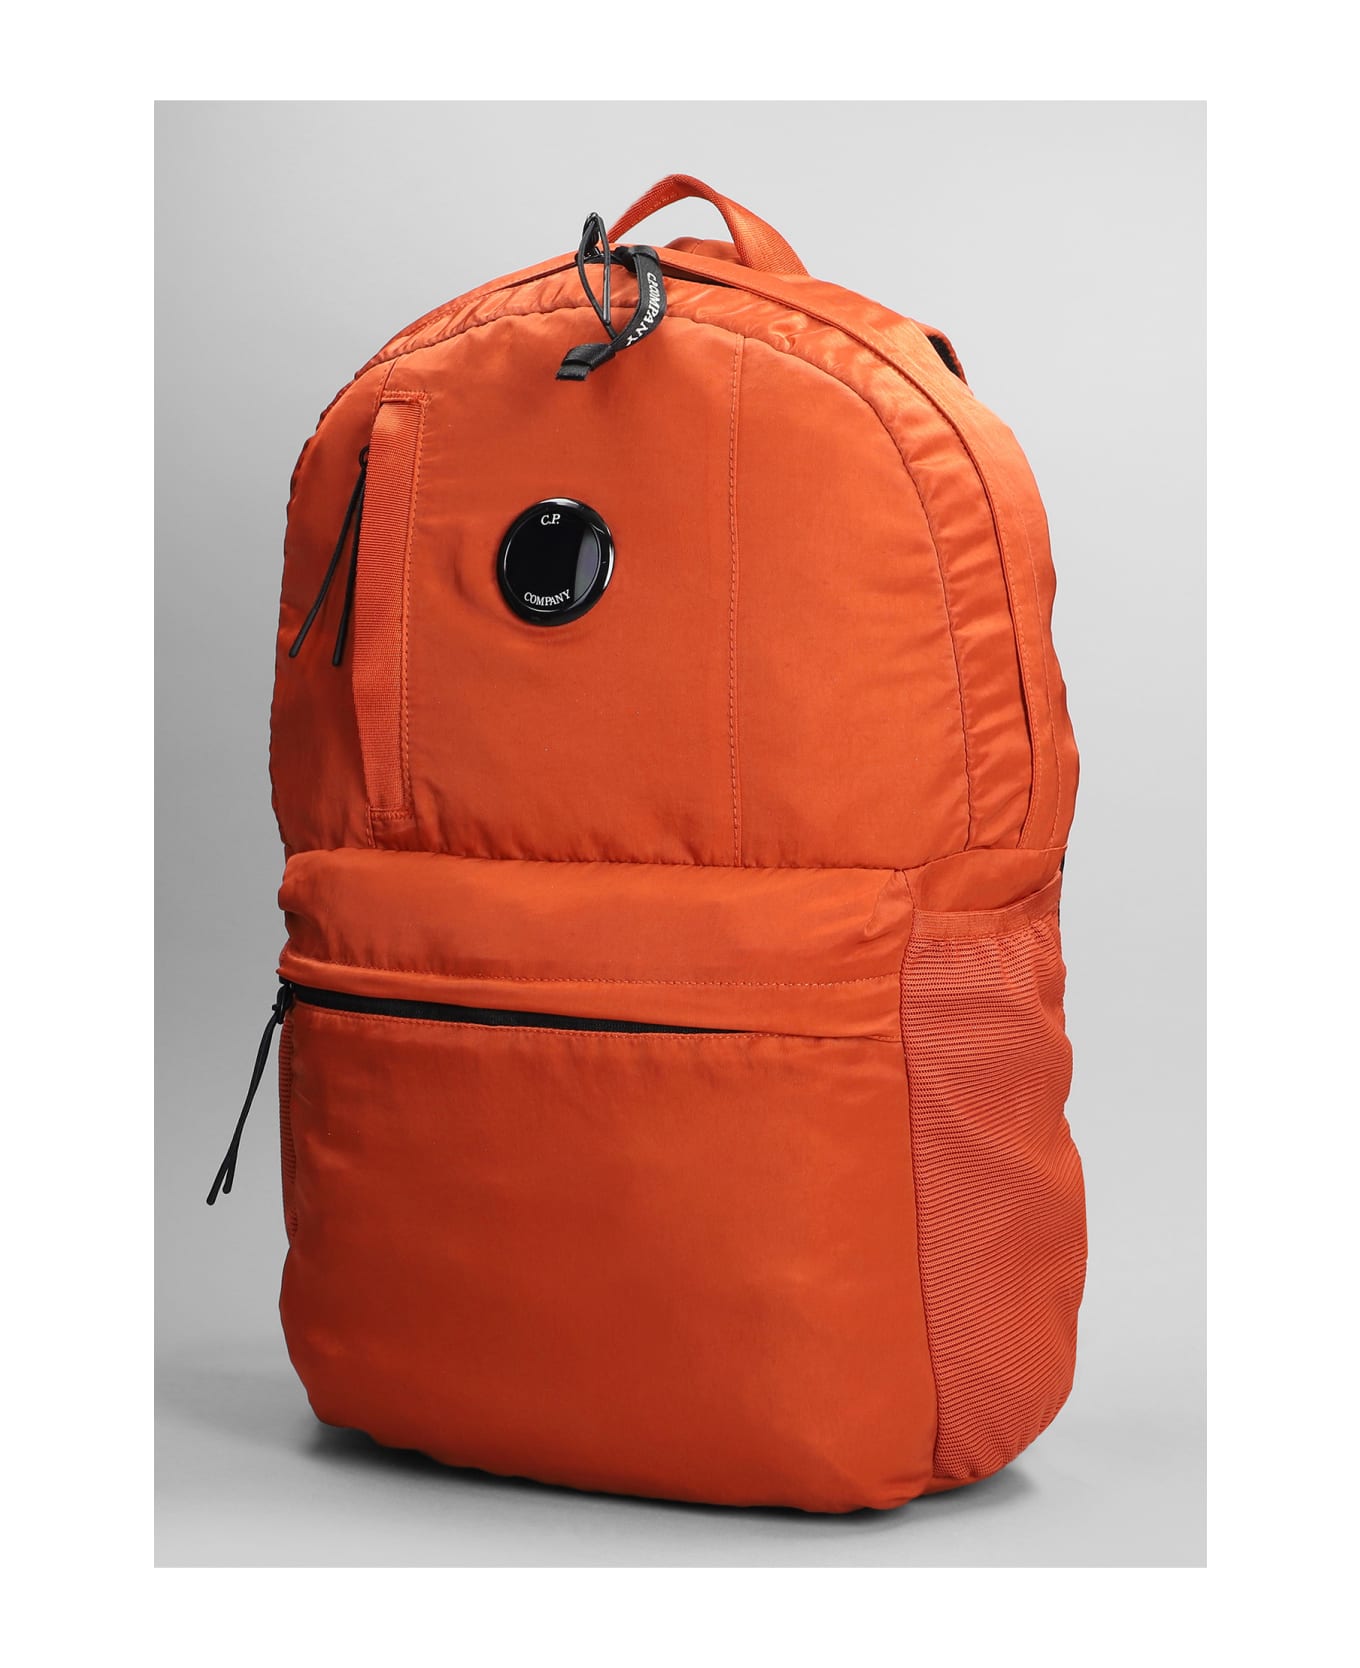 C.P. Company Nylon B Backpack In Orange Polyester - orange